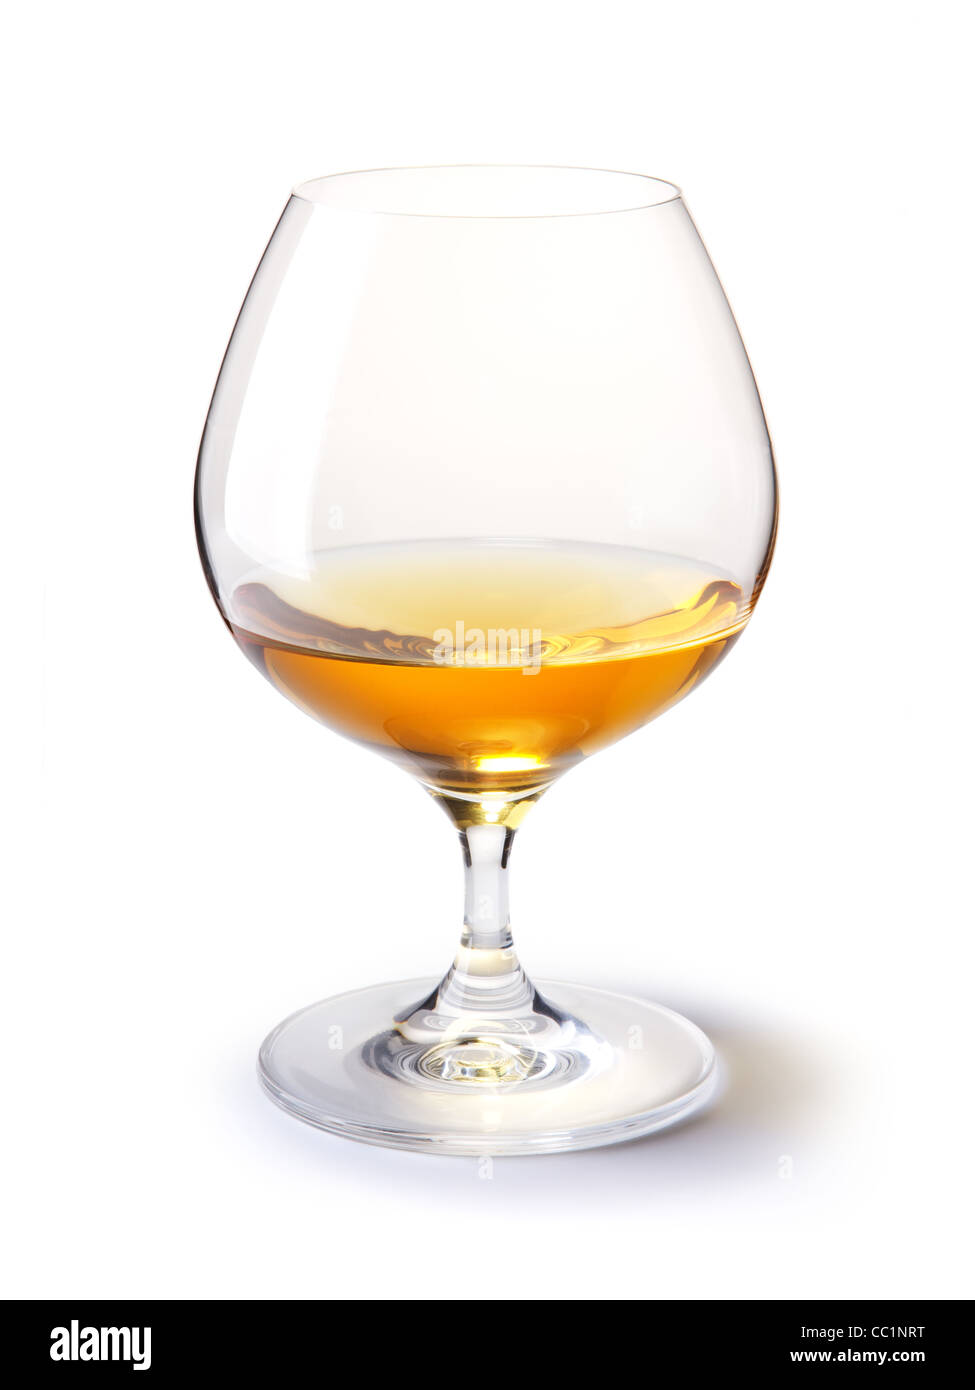 Verre de cognac cognac avec de l'or sur fond blanc avec ombre Banque D'Images